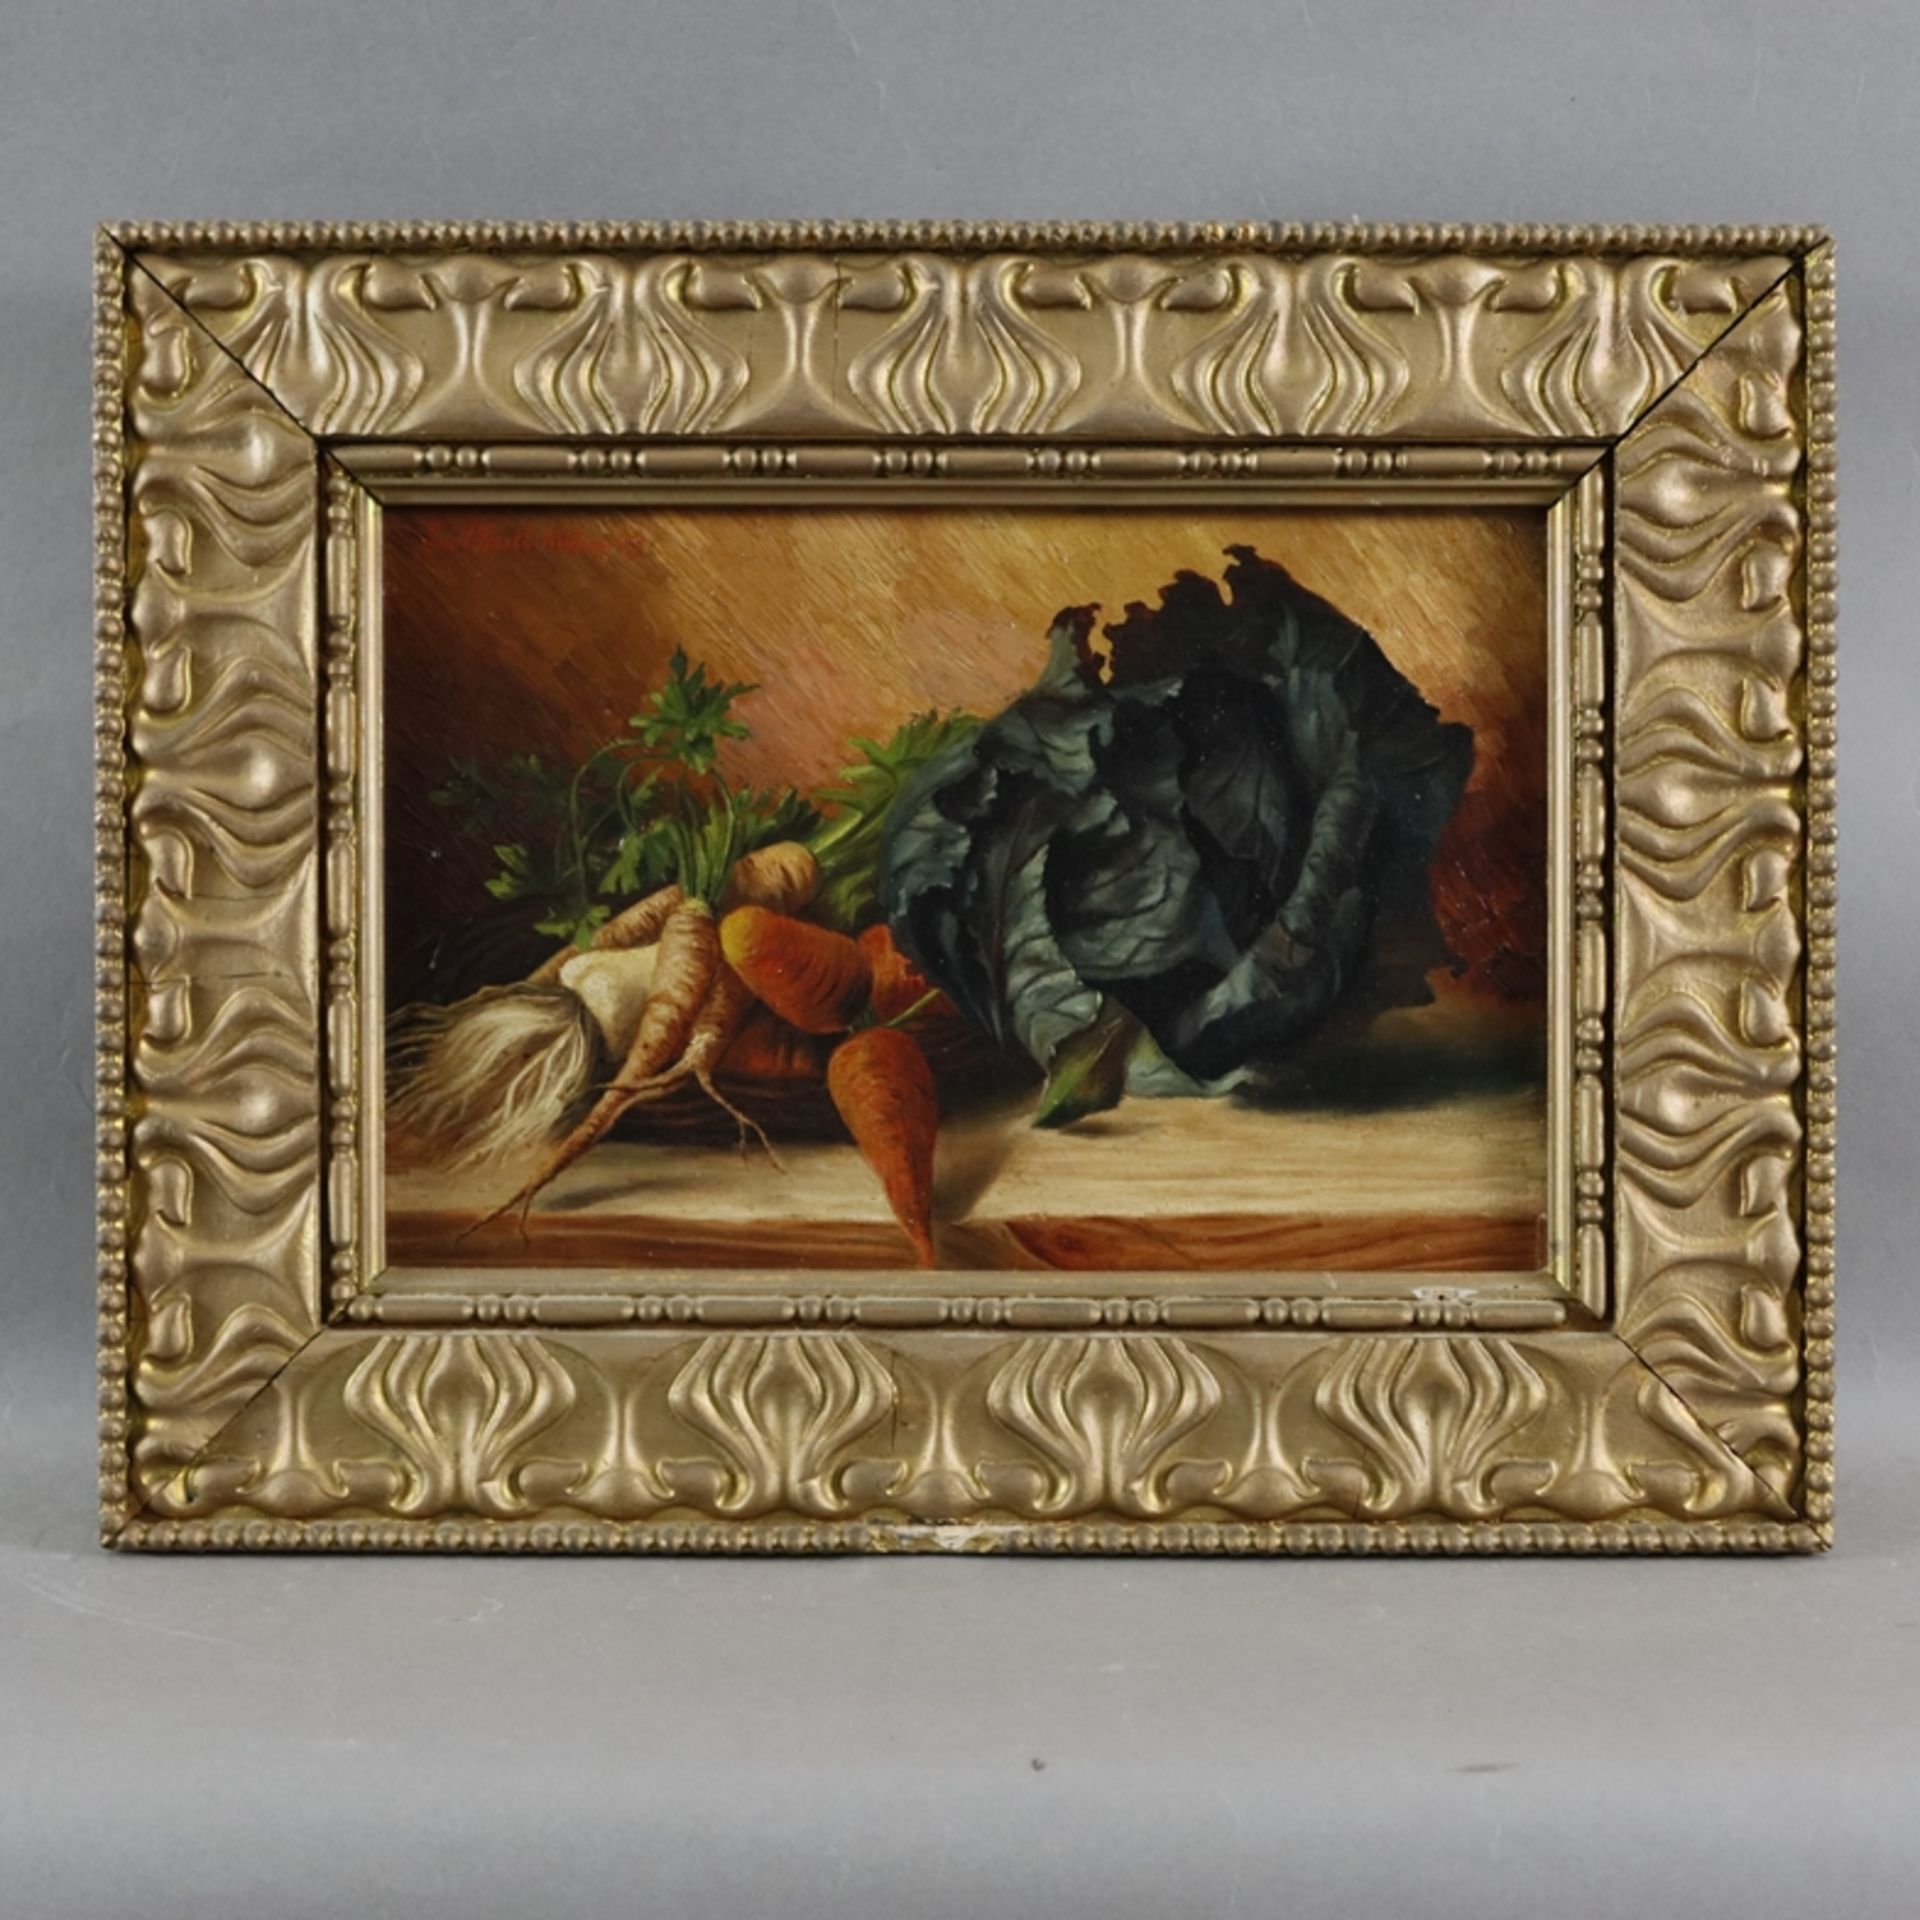 Knoll, Emil (1878-?, deutscher Maler) - Stillleben mit Gemüse, Öl auf Leinwand, oben links signiert - Image 2 of 6